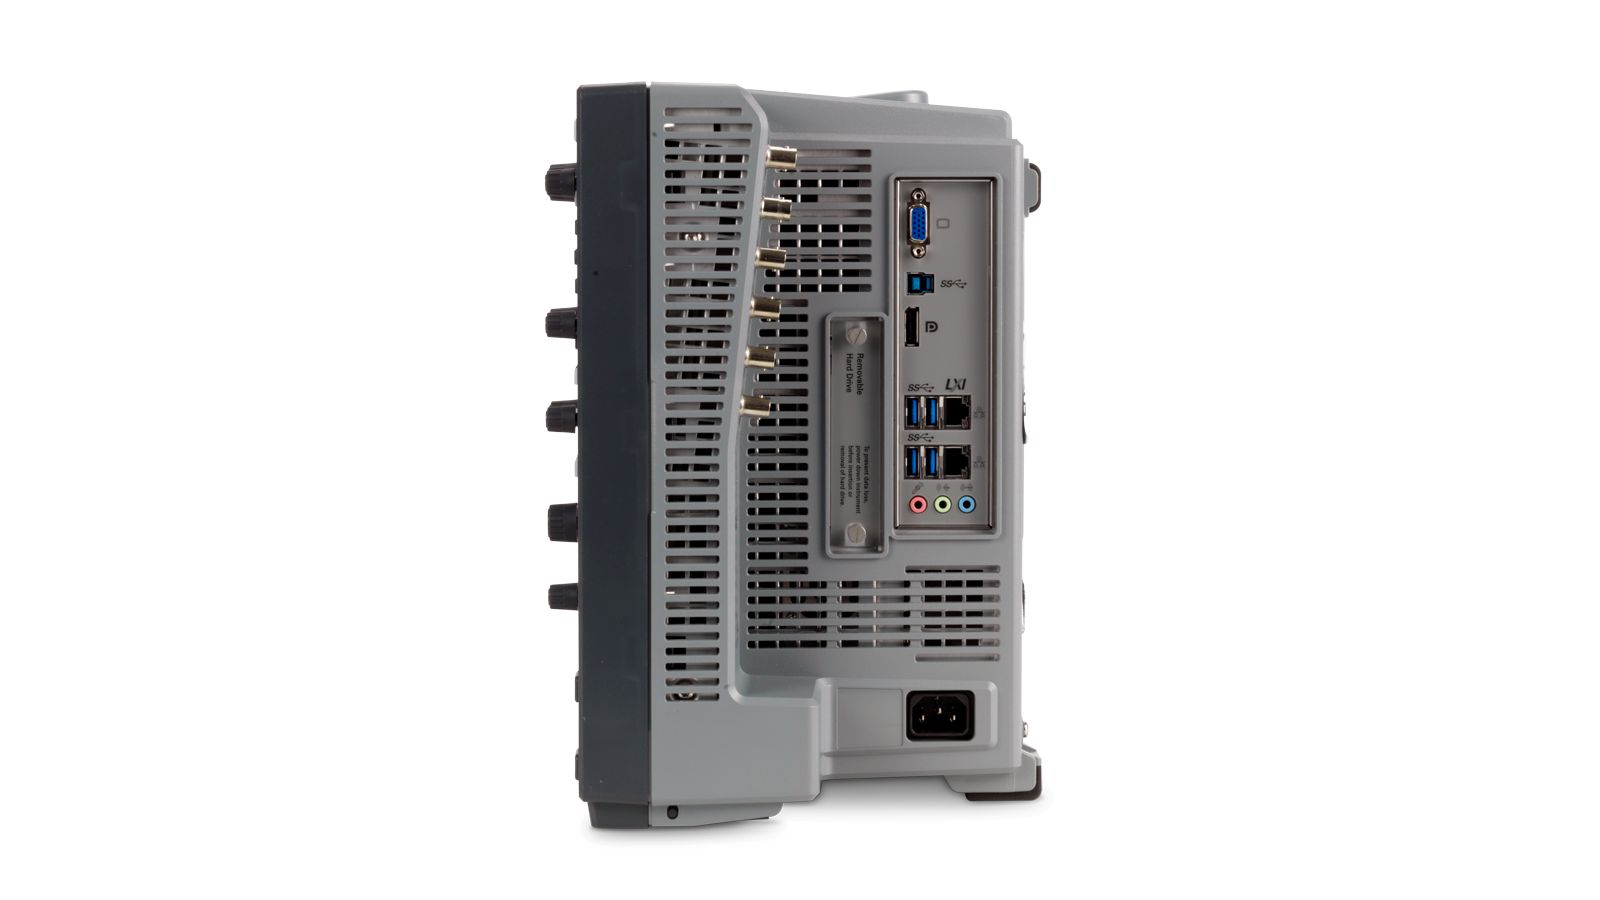 Keysight MXR604A Infiniium MXR-Series Real-Time Oscilloscope / 6 GHz / 16 GSa/s / 4 Channels